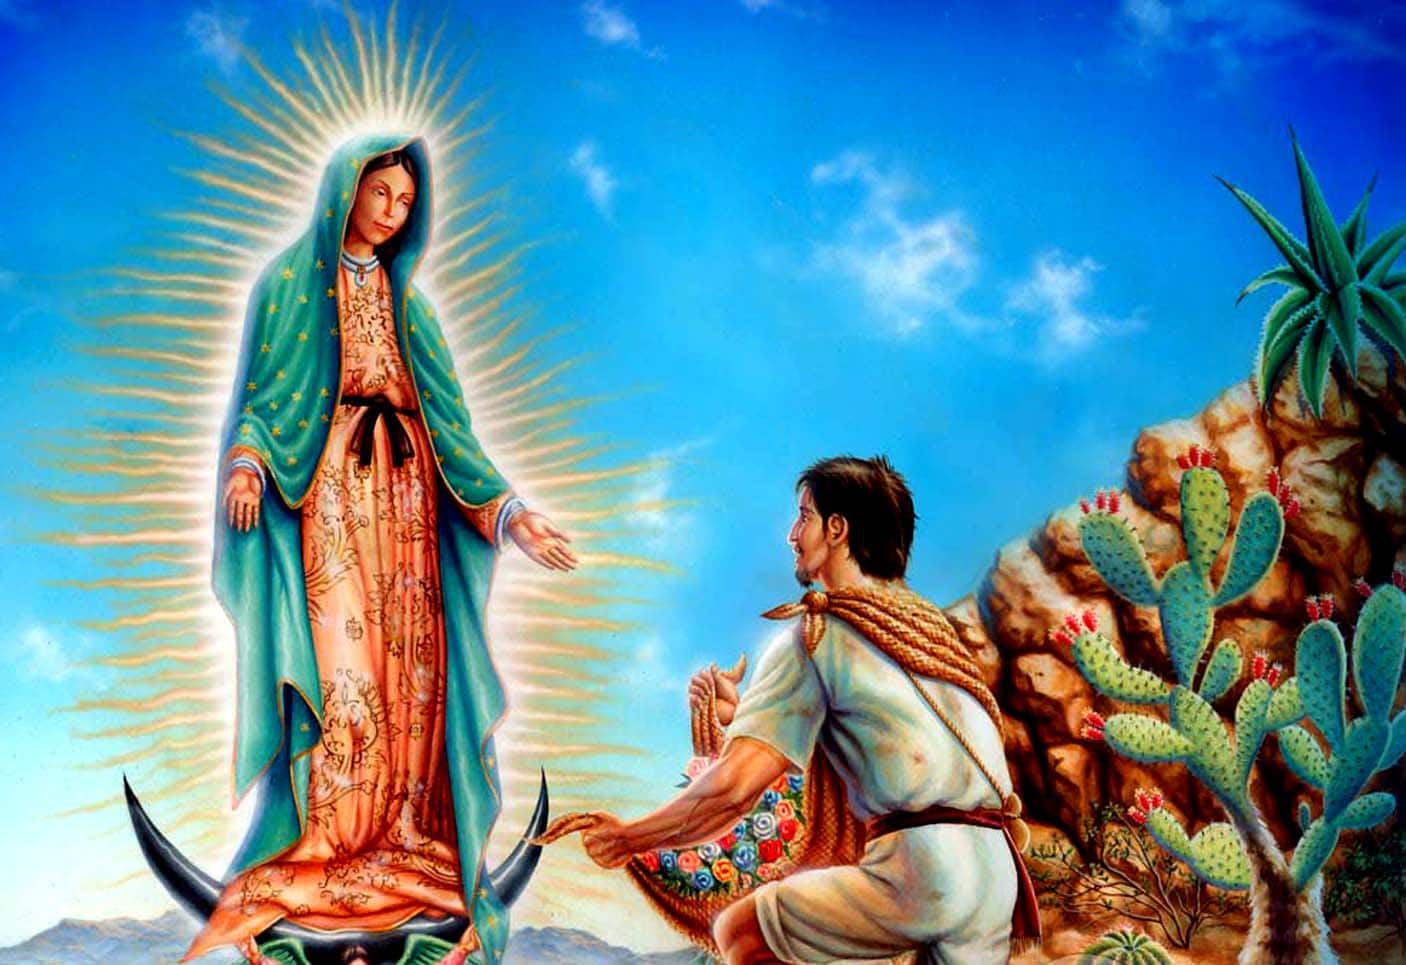 Oración a la Virgen de Guadalupe-7